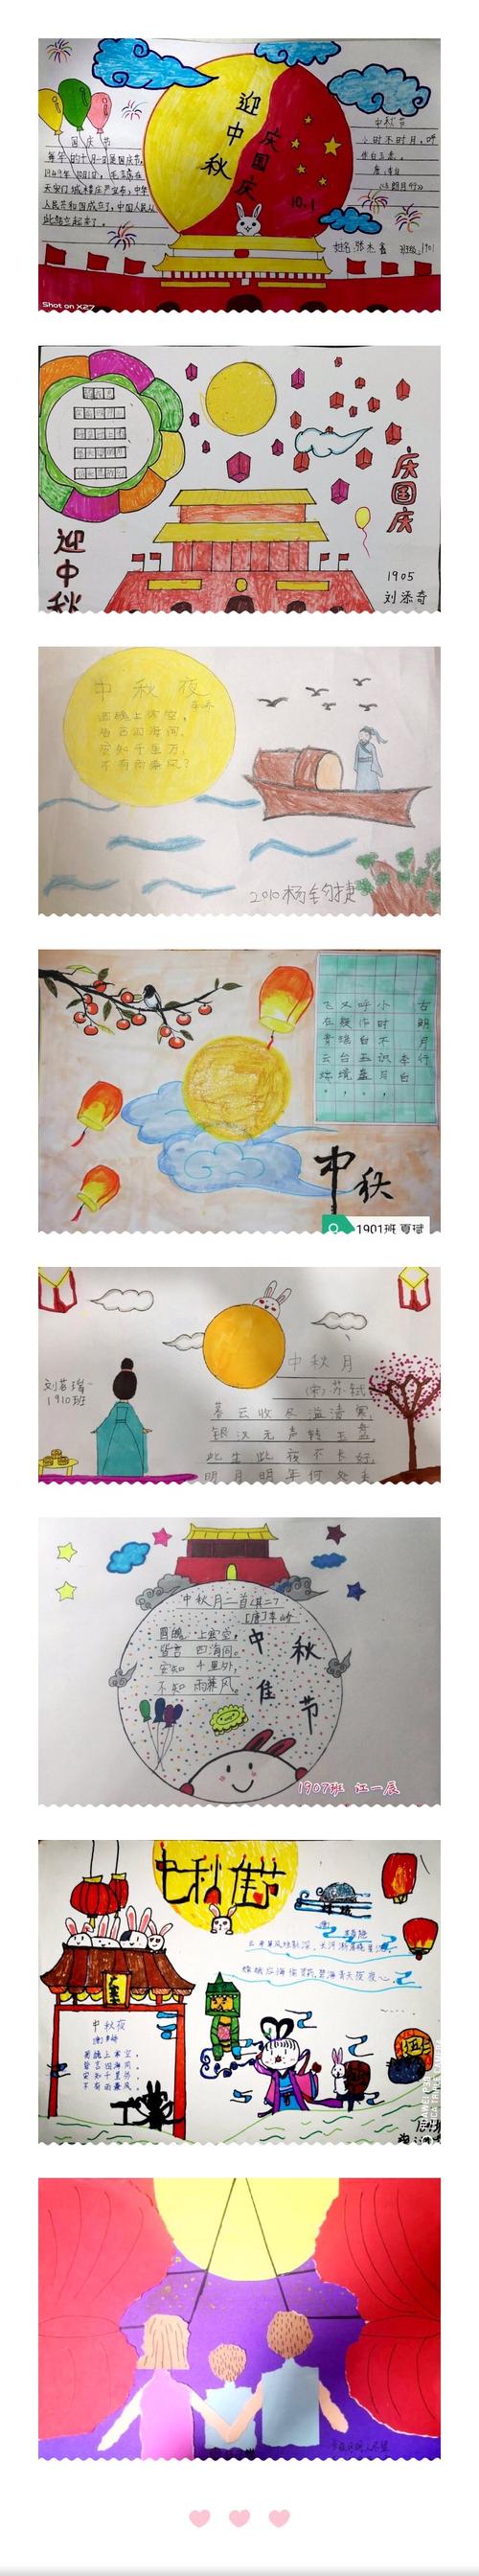 让孩子们更深入地了解了中秋节这一传统节日,体验了中秋所承载的中国